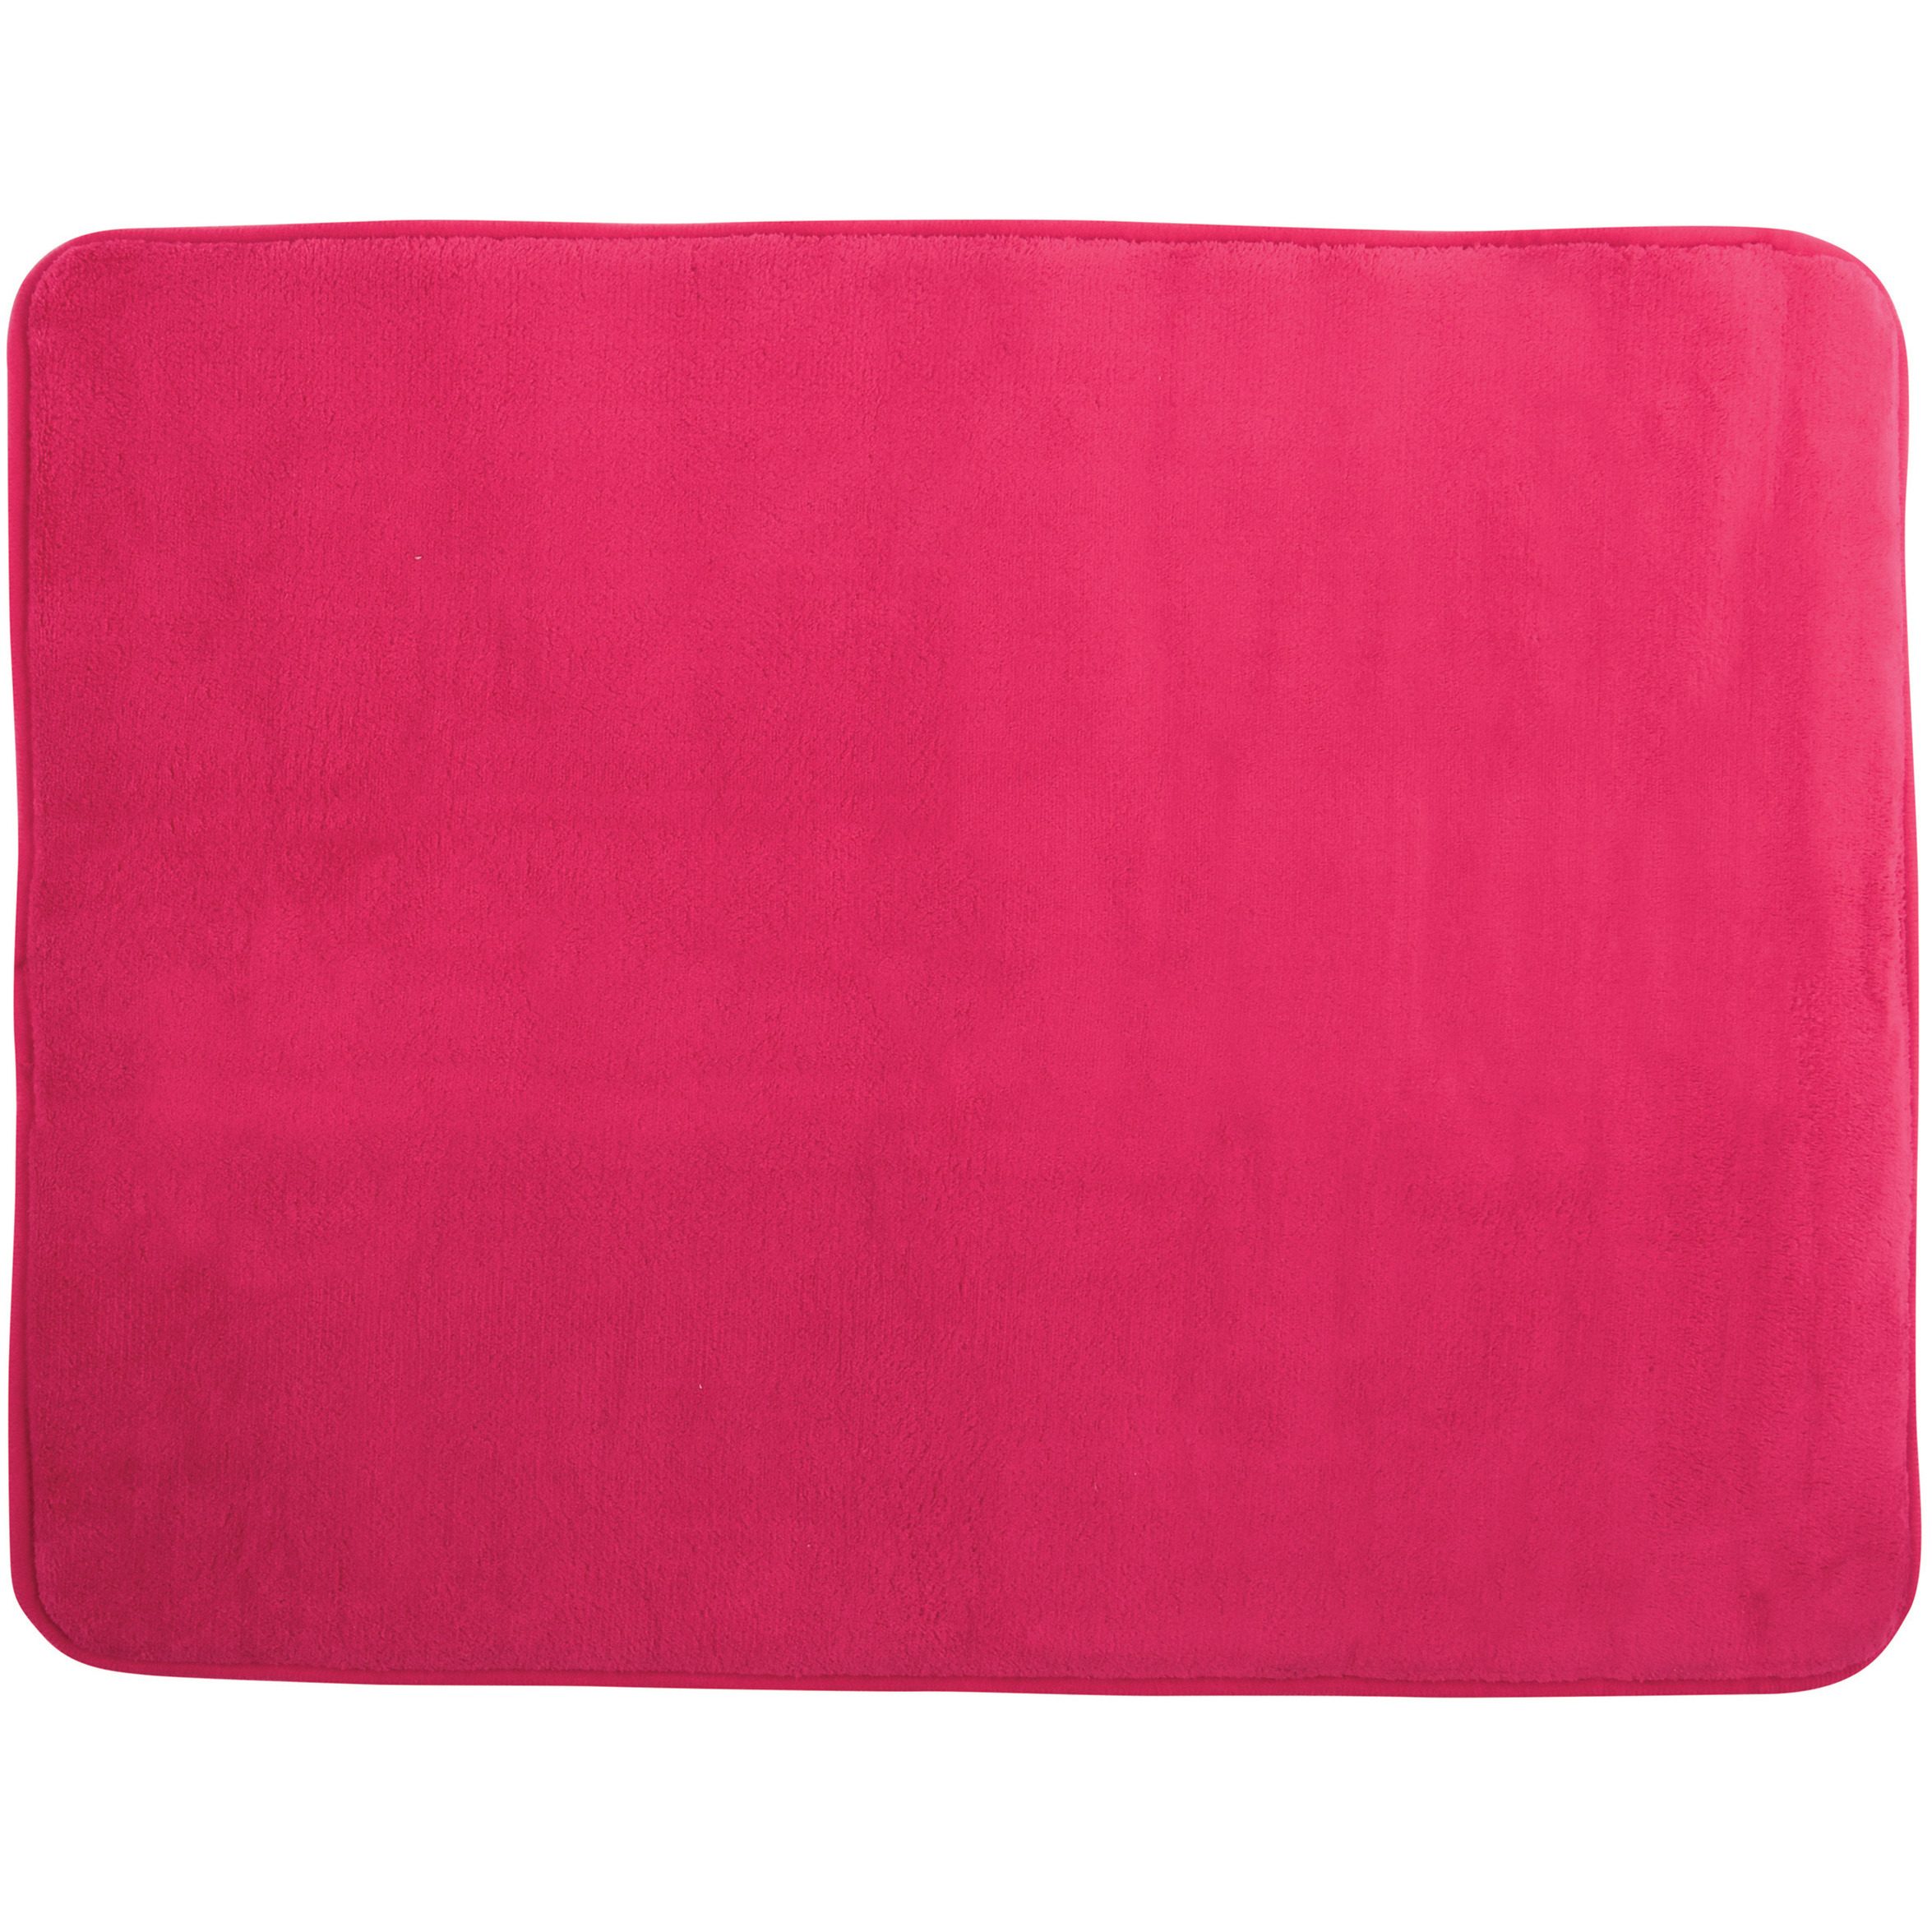 MSV Badkamerkleedje-badmat voor op de vloer fuchsia roze 50 x 70 cm